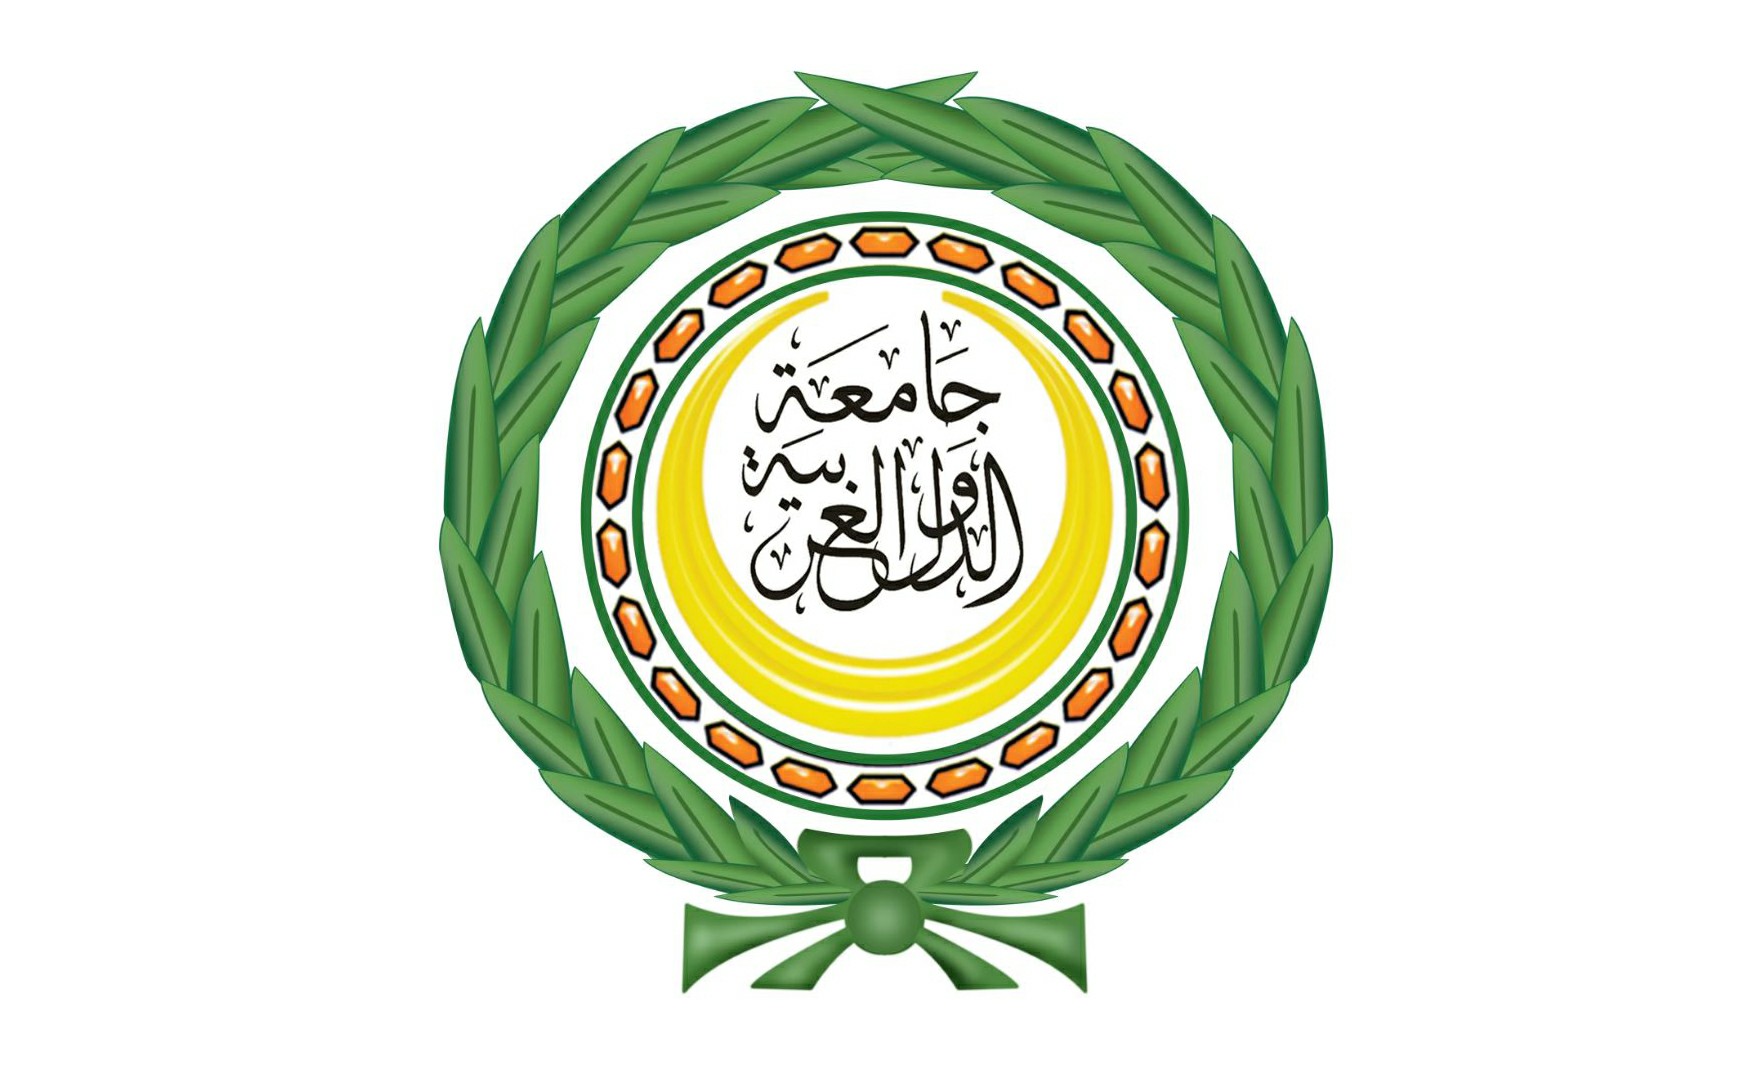 الجامعة العربية تطالب بتصنيف ميليشيا الحوثي كمنظمة إرهابية